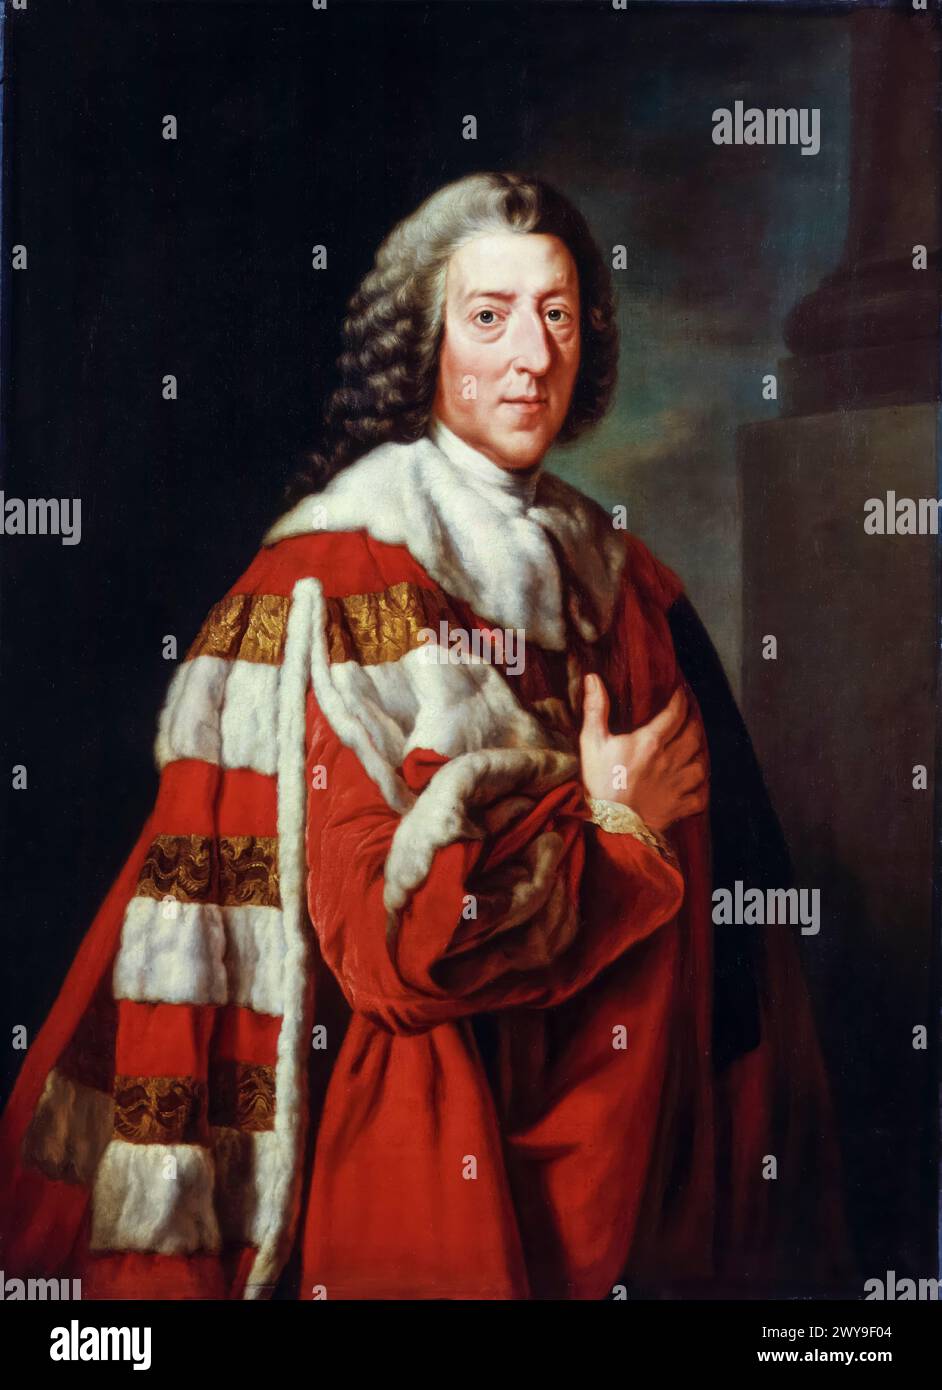 William Pitt il Vecchio, i conte di Chatham (1708-1778), politico Whig e primo ministro della Gran Bretagna 1766-1768, ritratto a olio su tela dopo Richard Brompton, 1772 Foto Stock